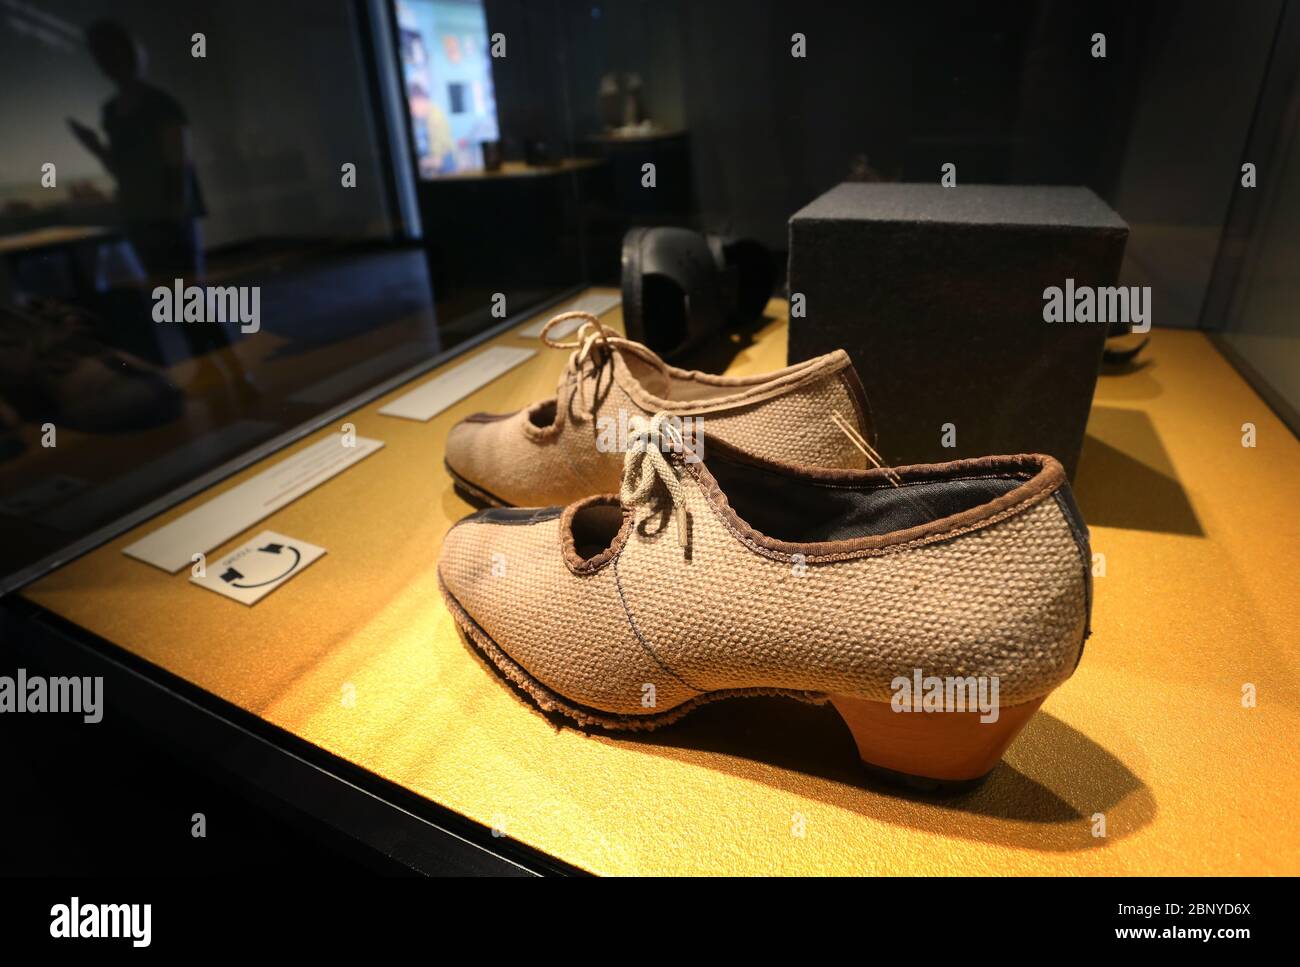 Iphofen, Germania. 8 maggio 2020. Le scarpe realizzate con manichette  antincendio della fine degli anni '40 sono esposte nel museo Knauf. 80  mostre di scarpe speciali saranno presentate nella mostra speciale 'Shoe